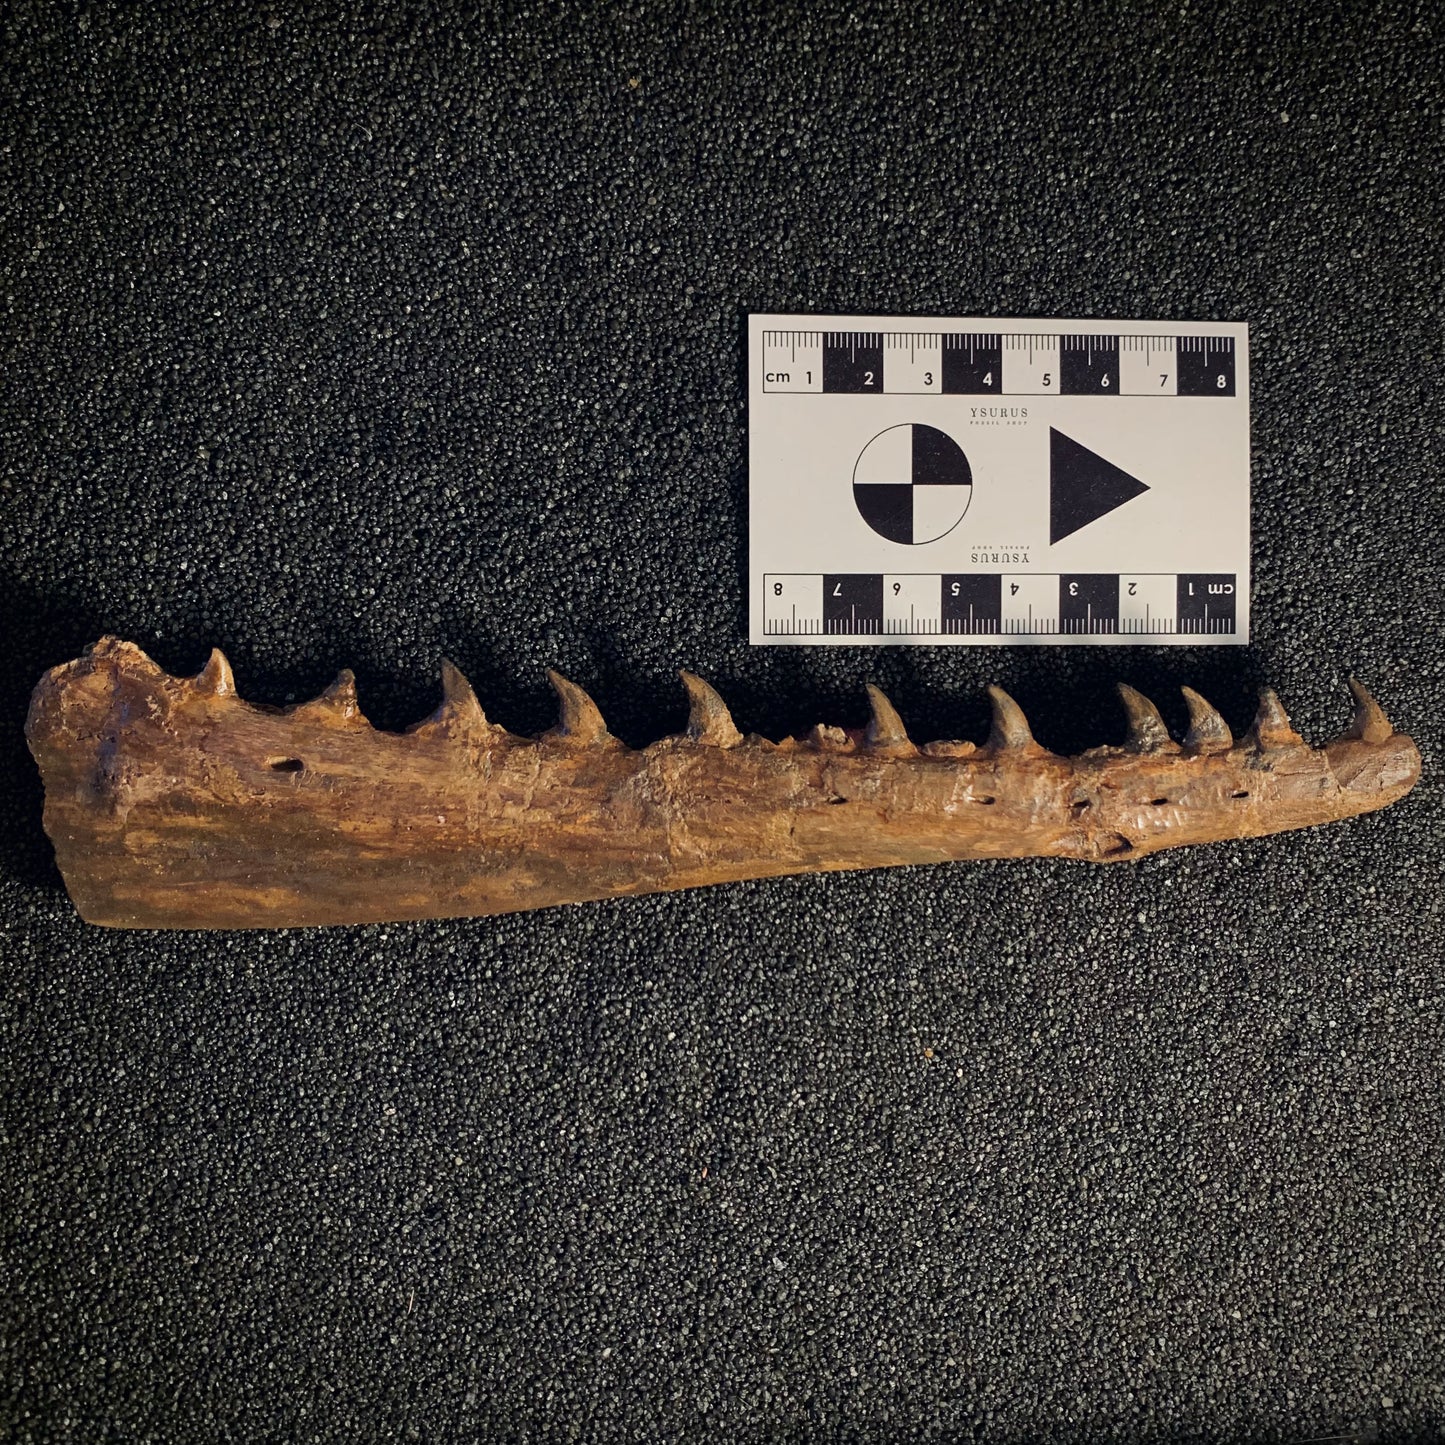 F398 | Mosasauro | Tethysaurus nopcsai